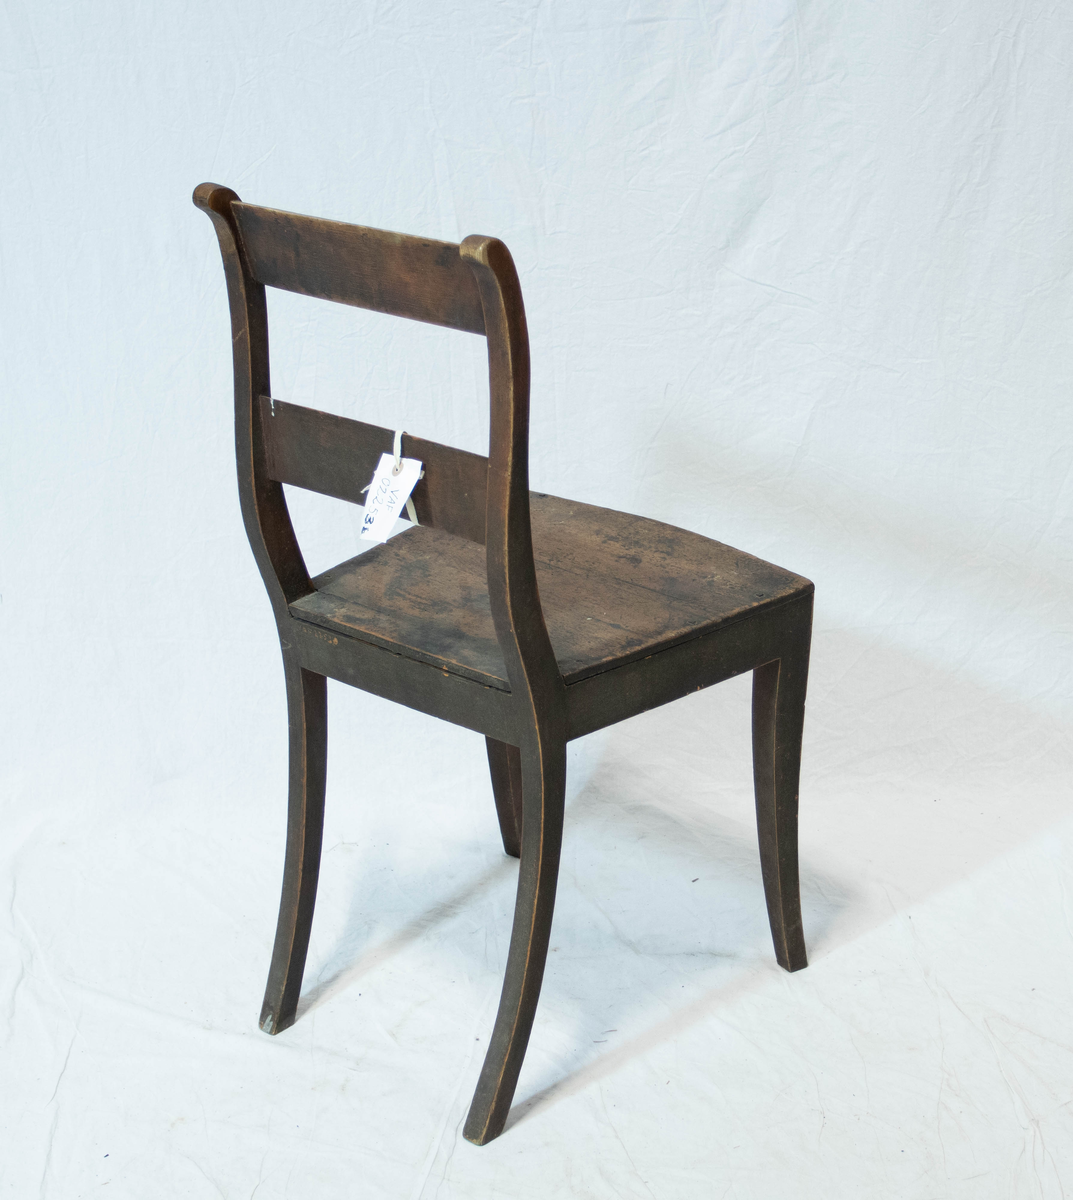 Stol av tre. Stolen har fire sabelformede ben og glatt sarg. Setet er trapeslignende med horisontalt buet fremkant.  Stolen har S-svungne ryggstaver forbundet med to glatte horisontale bretter.